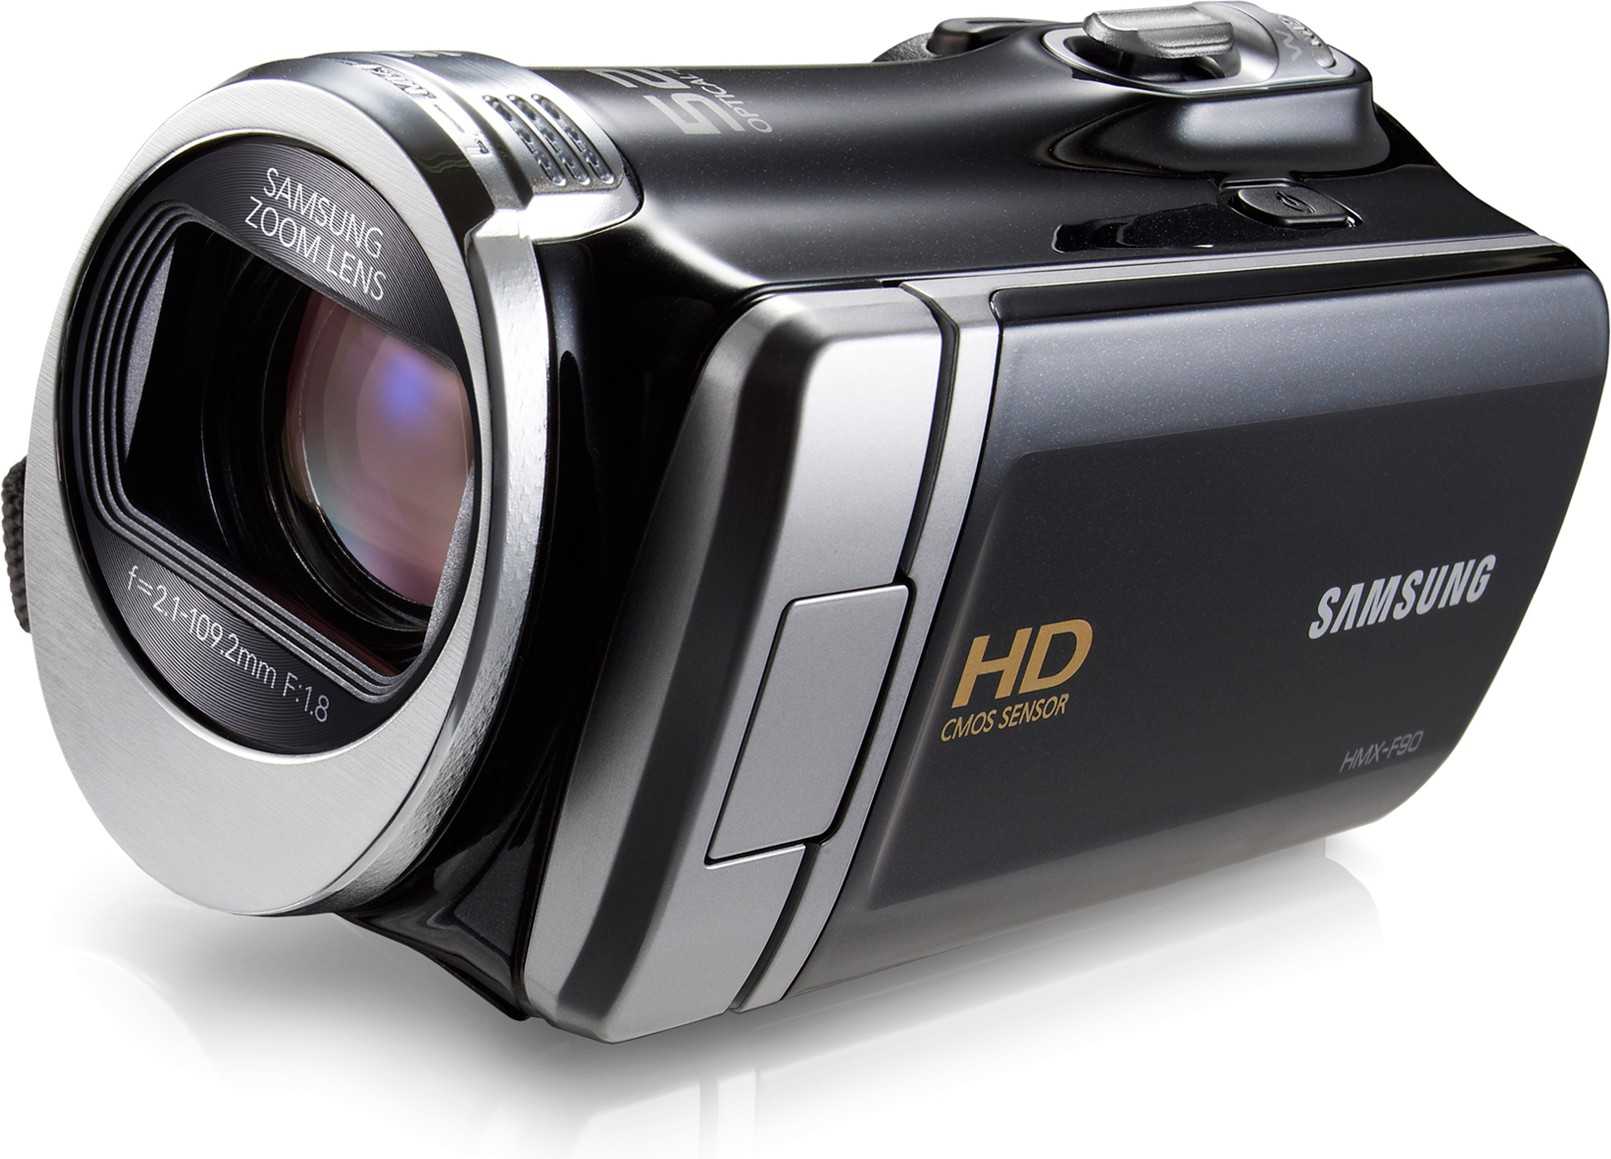 Samsung hmx-h320 - купить , скидки, цена, отзывы, обзор, характеристики - видеокамеры